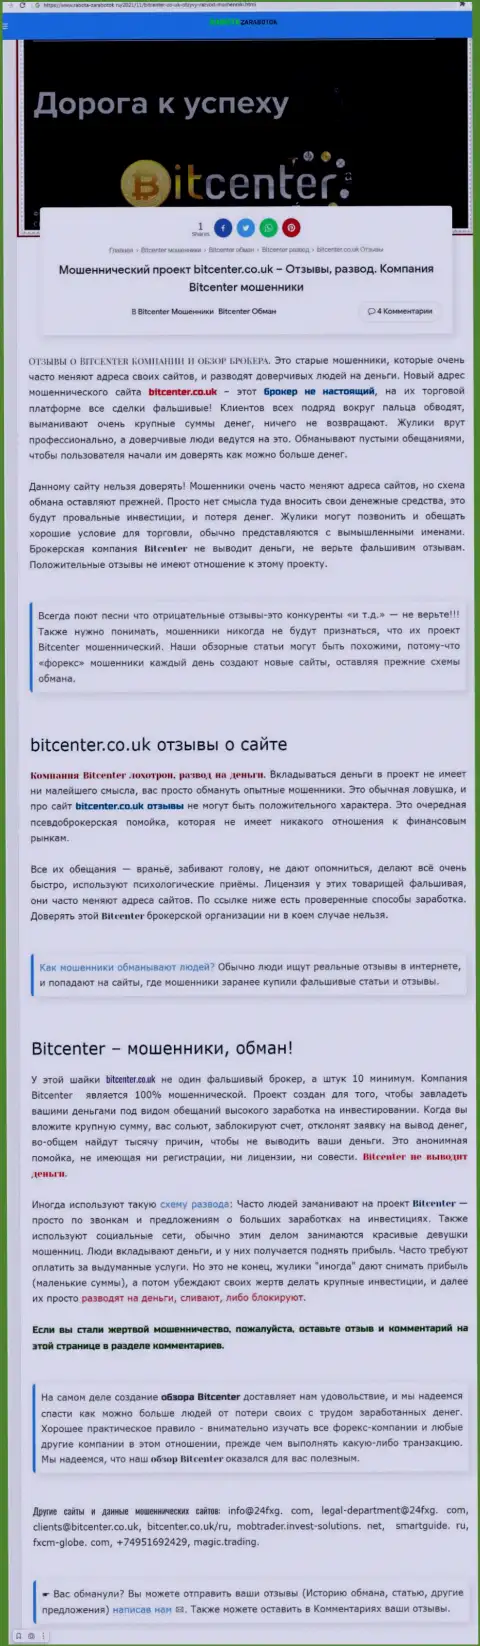 BitCenter Co Uk - это контора, сотрудничество с которой приносит только потери (обзор деятельности)